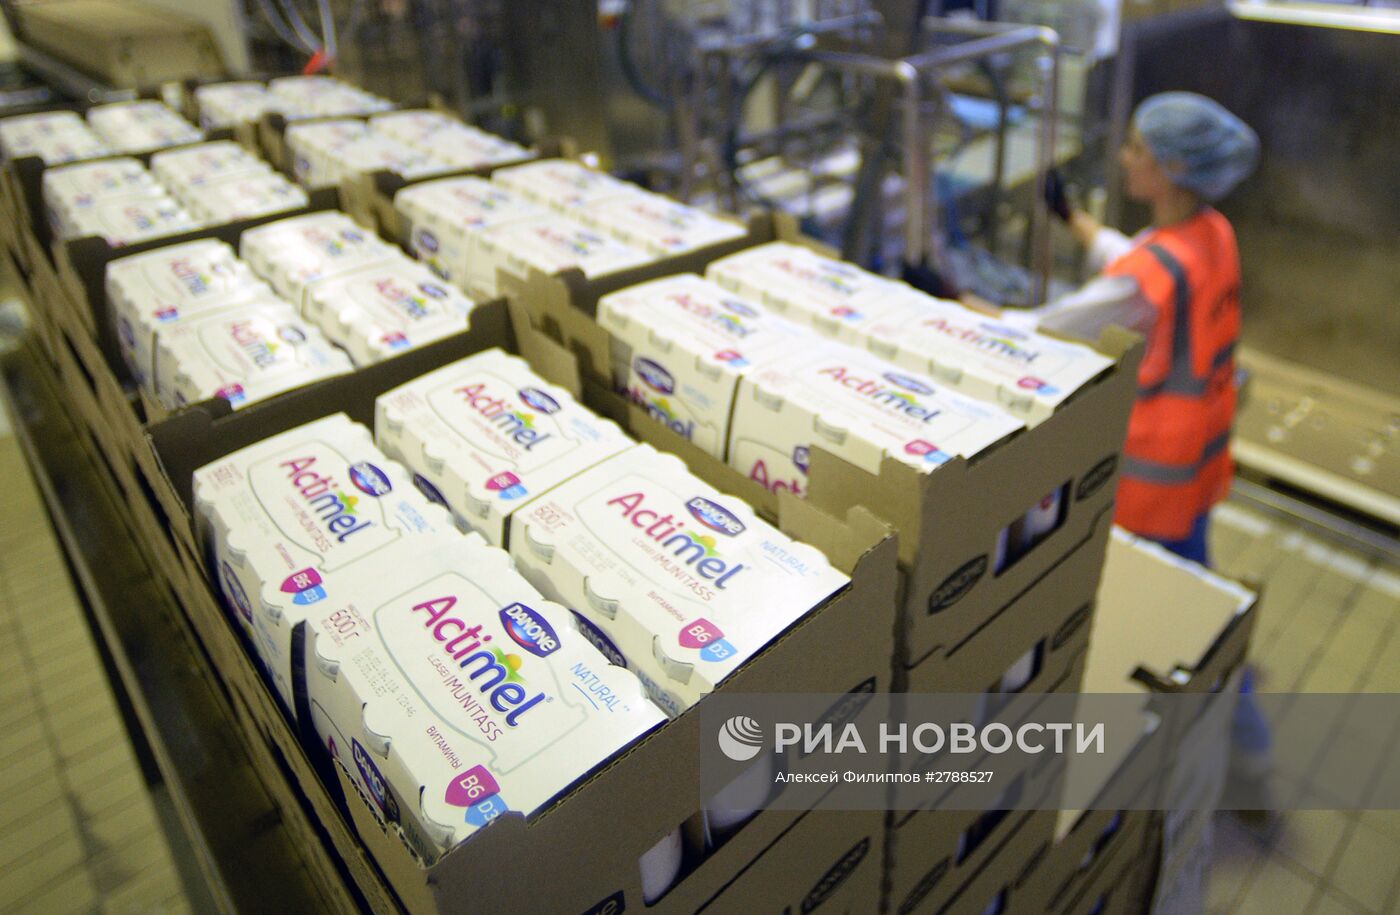 Производство молочной продукции на предприятии Danonе